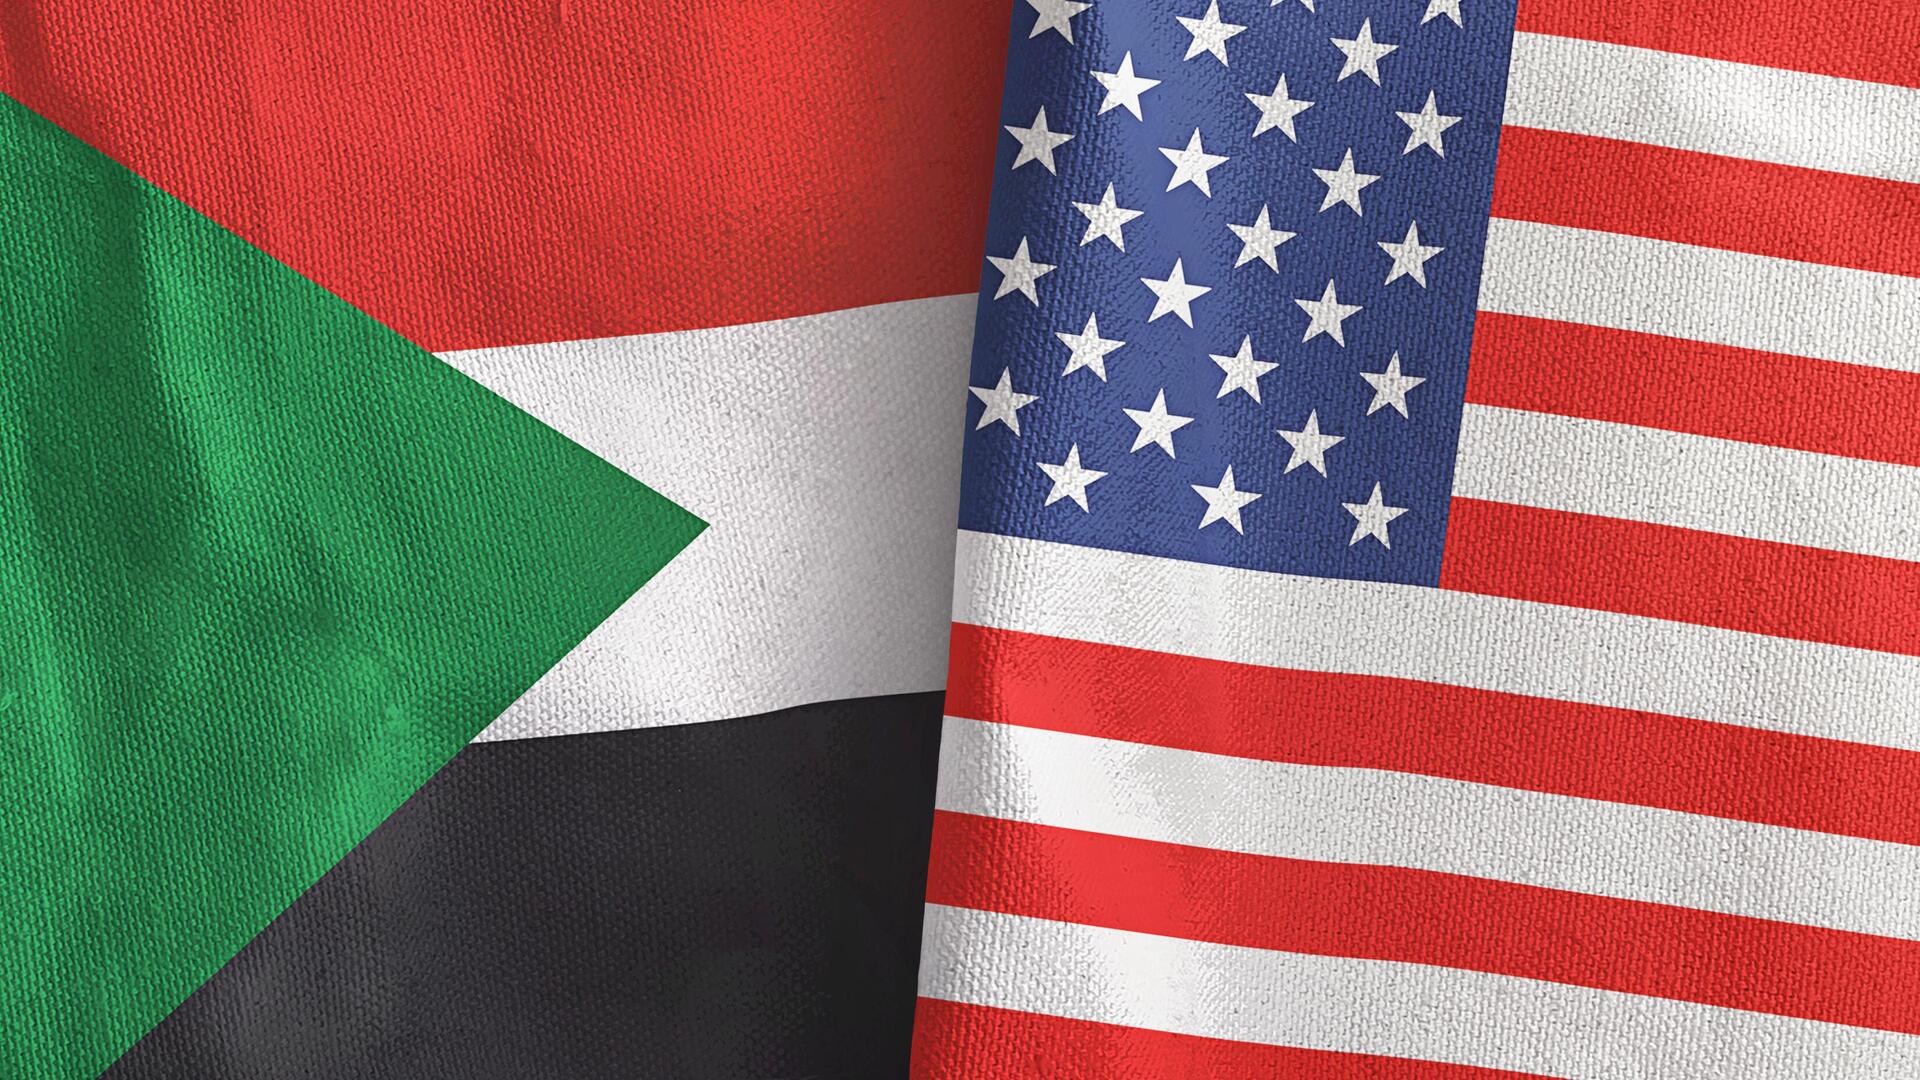 وسائل إعلام: واشنطن تستعد لفرض عقوبات على طرفي النزاع في السودان